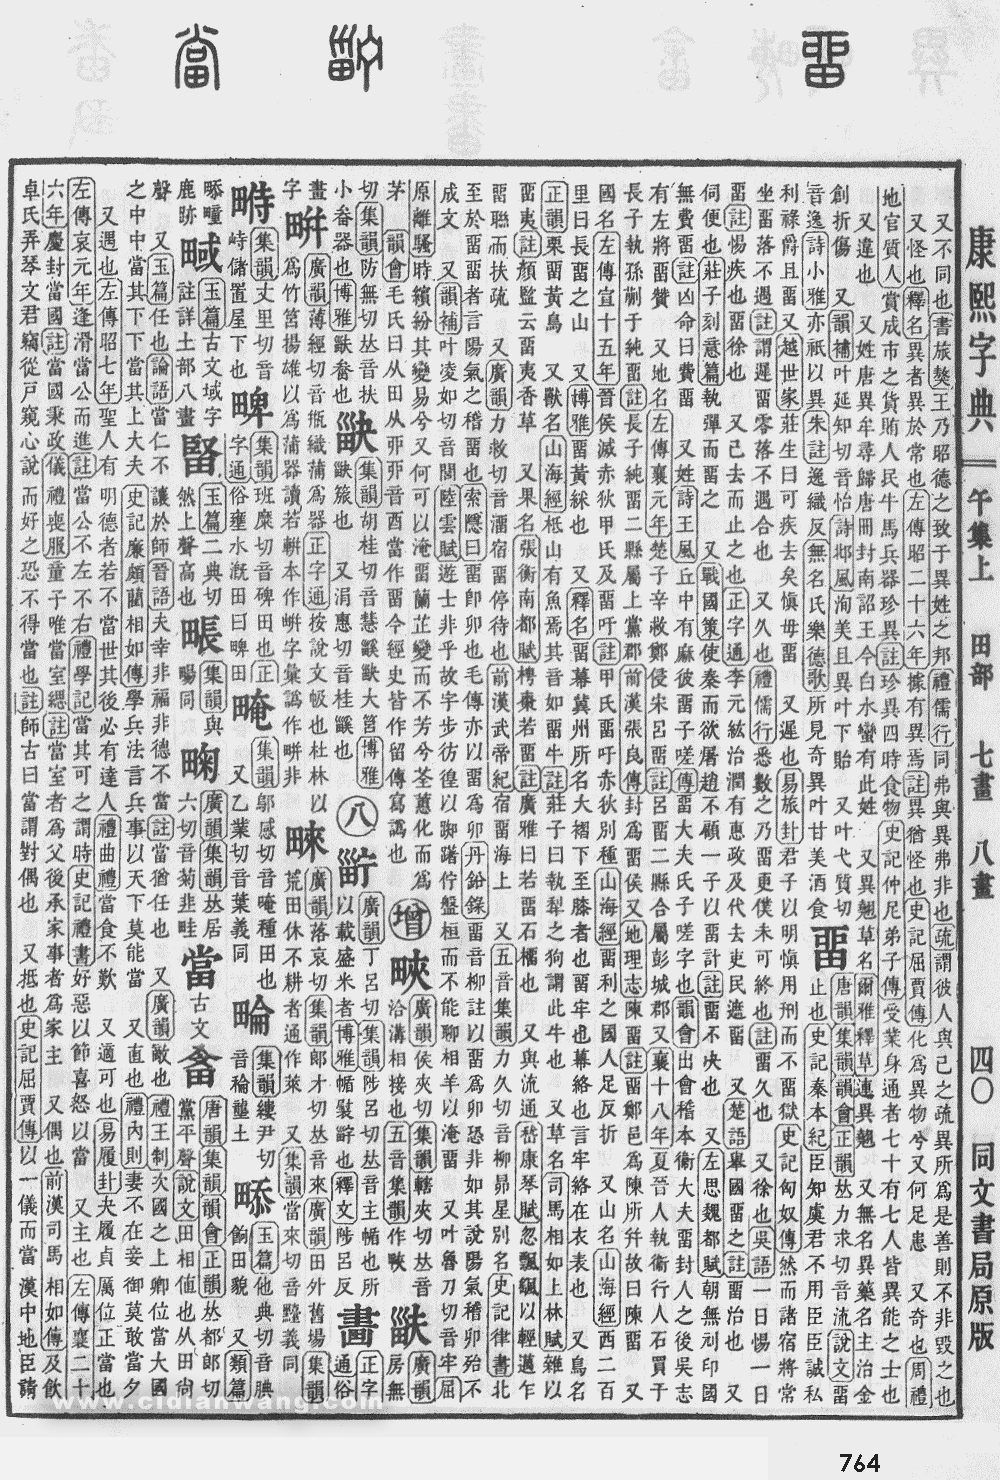 康熙字典掃描版第764頁